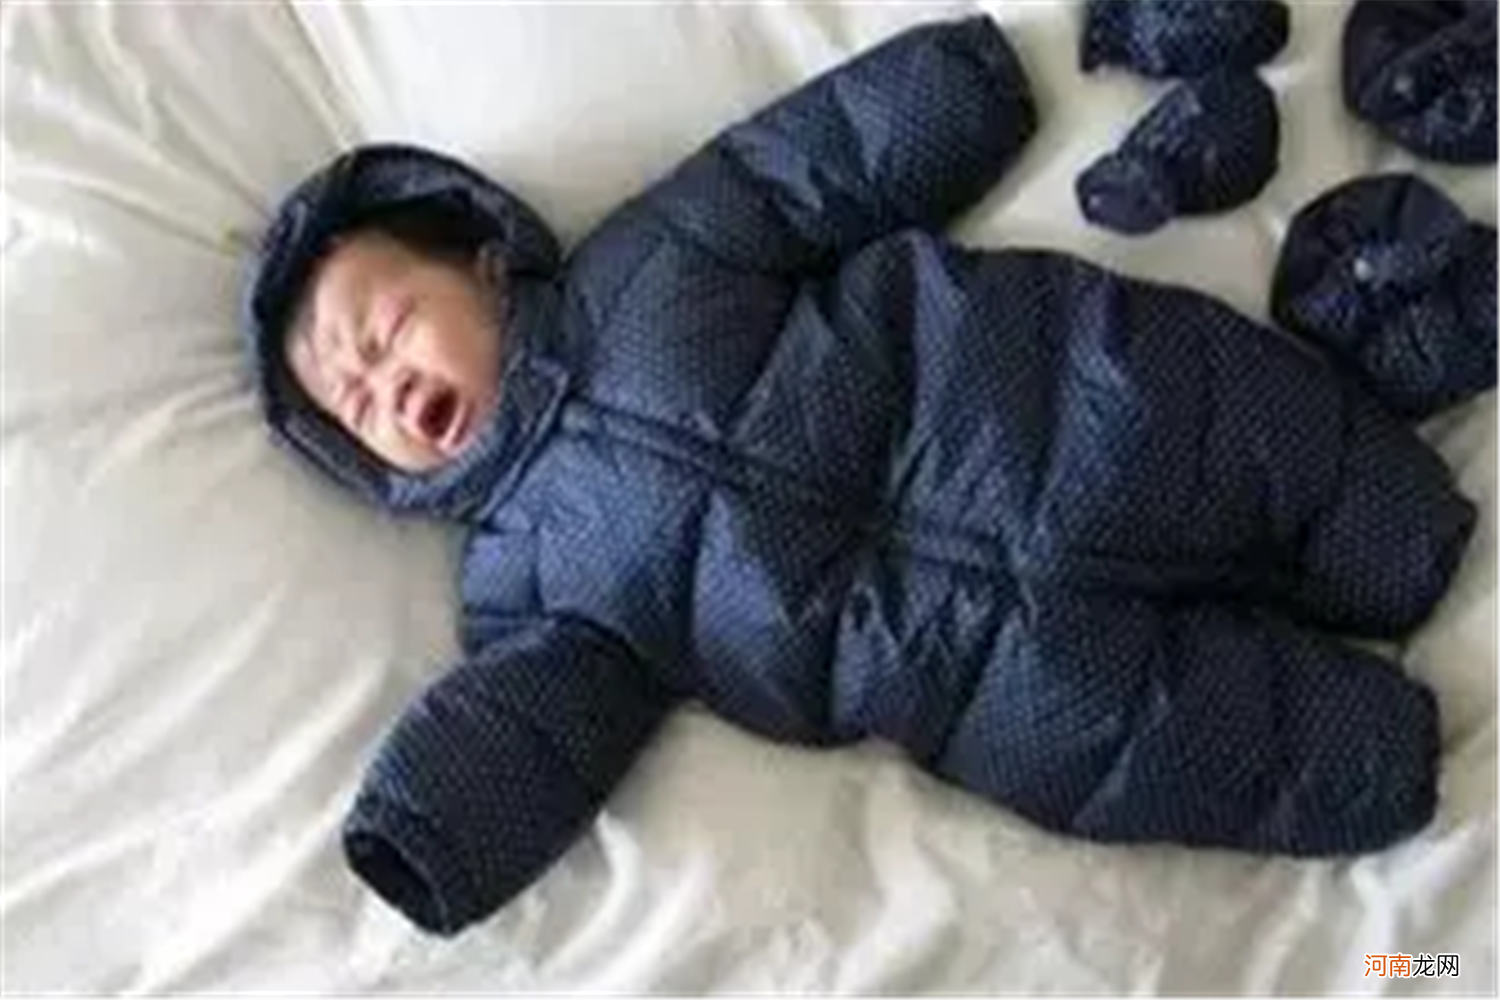 早晚温差大宝宝易着凉，掌握秋季穿衣法则，宝宝少生病妈妈更安心